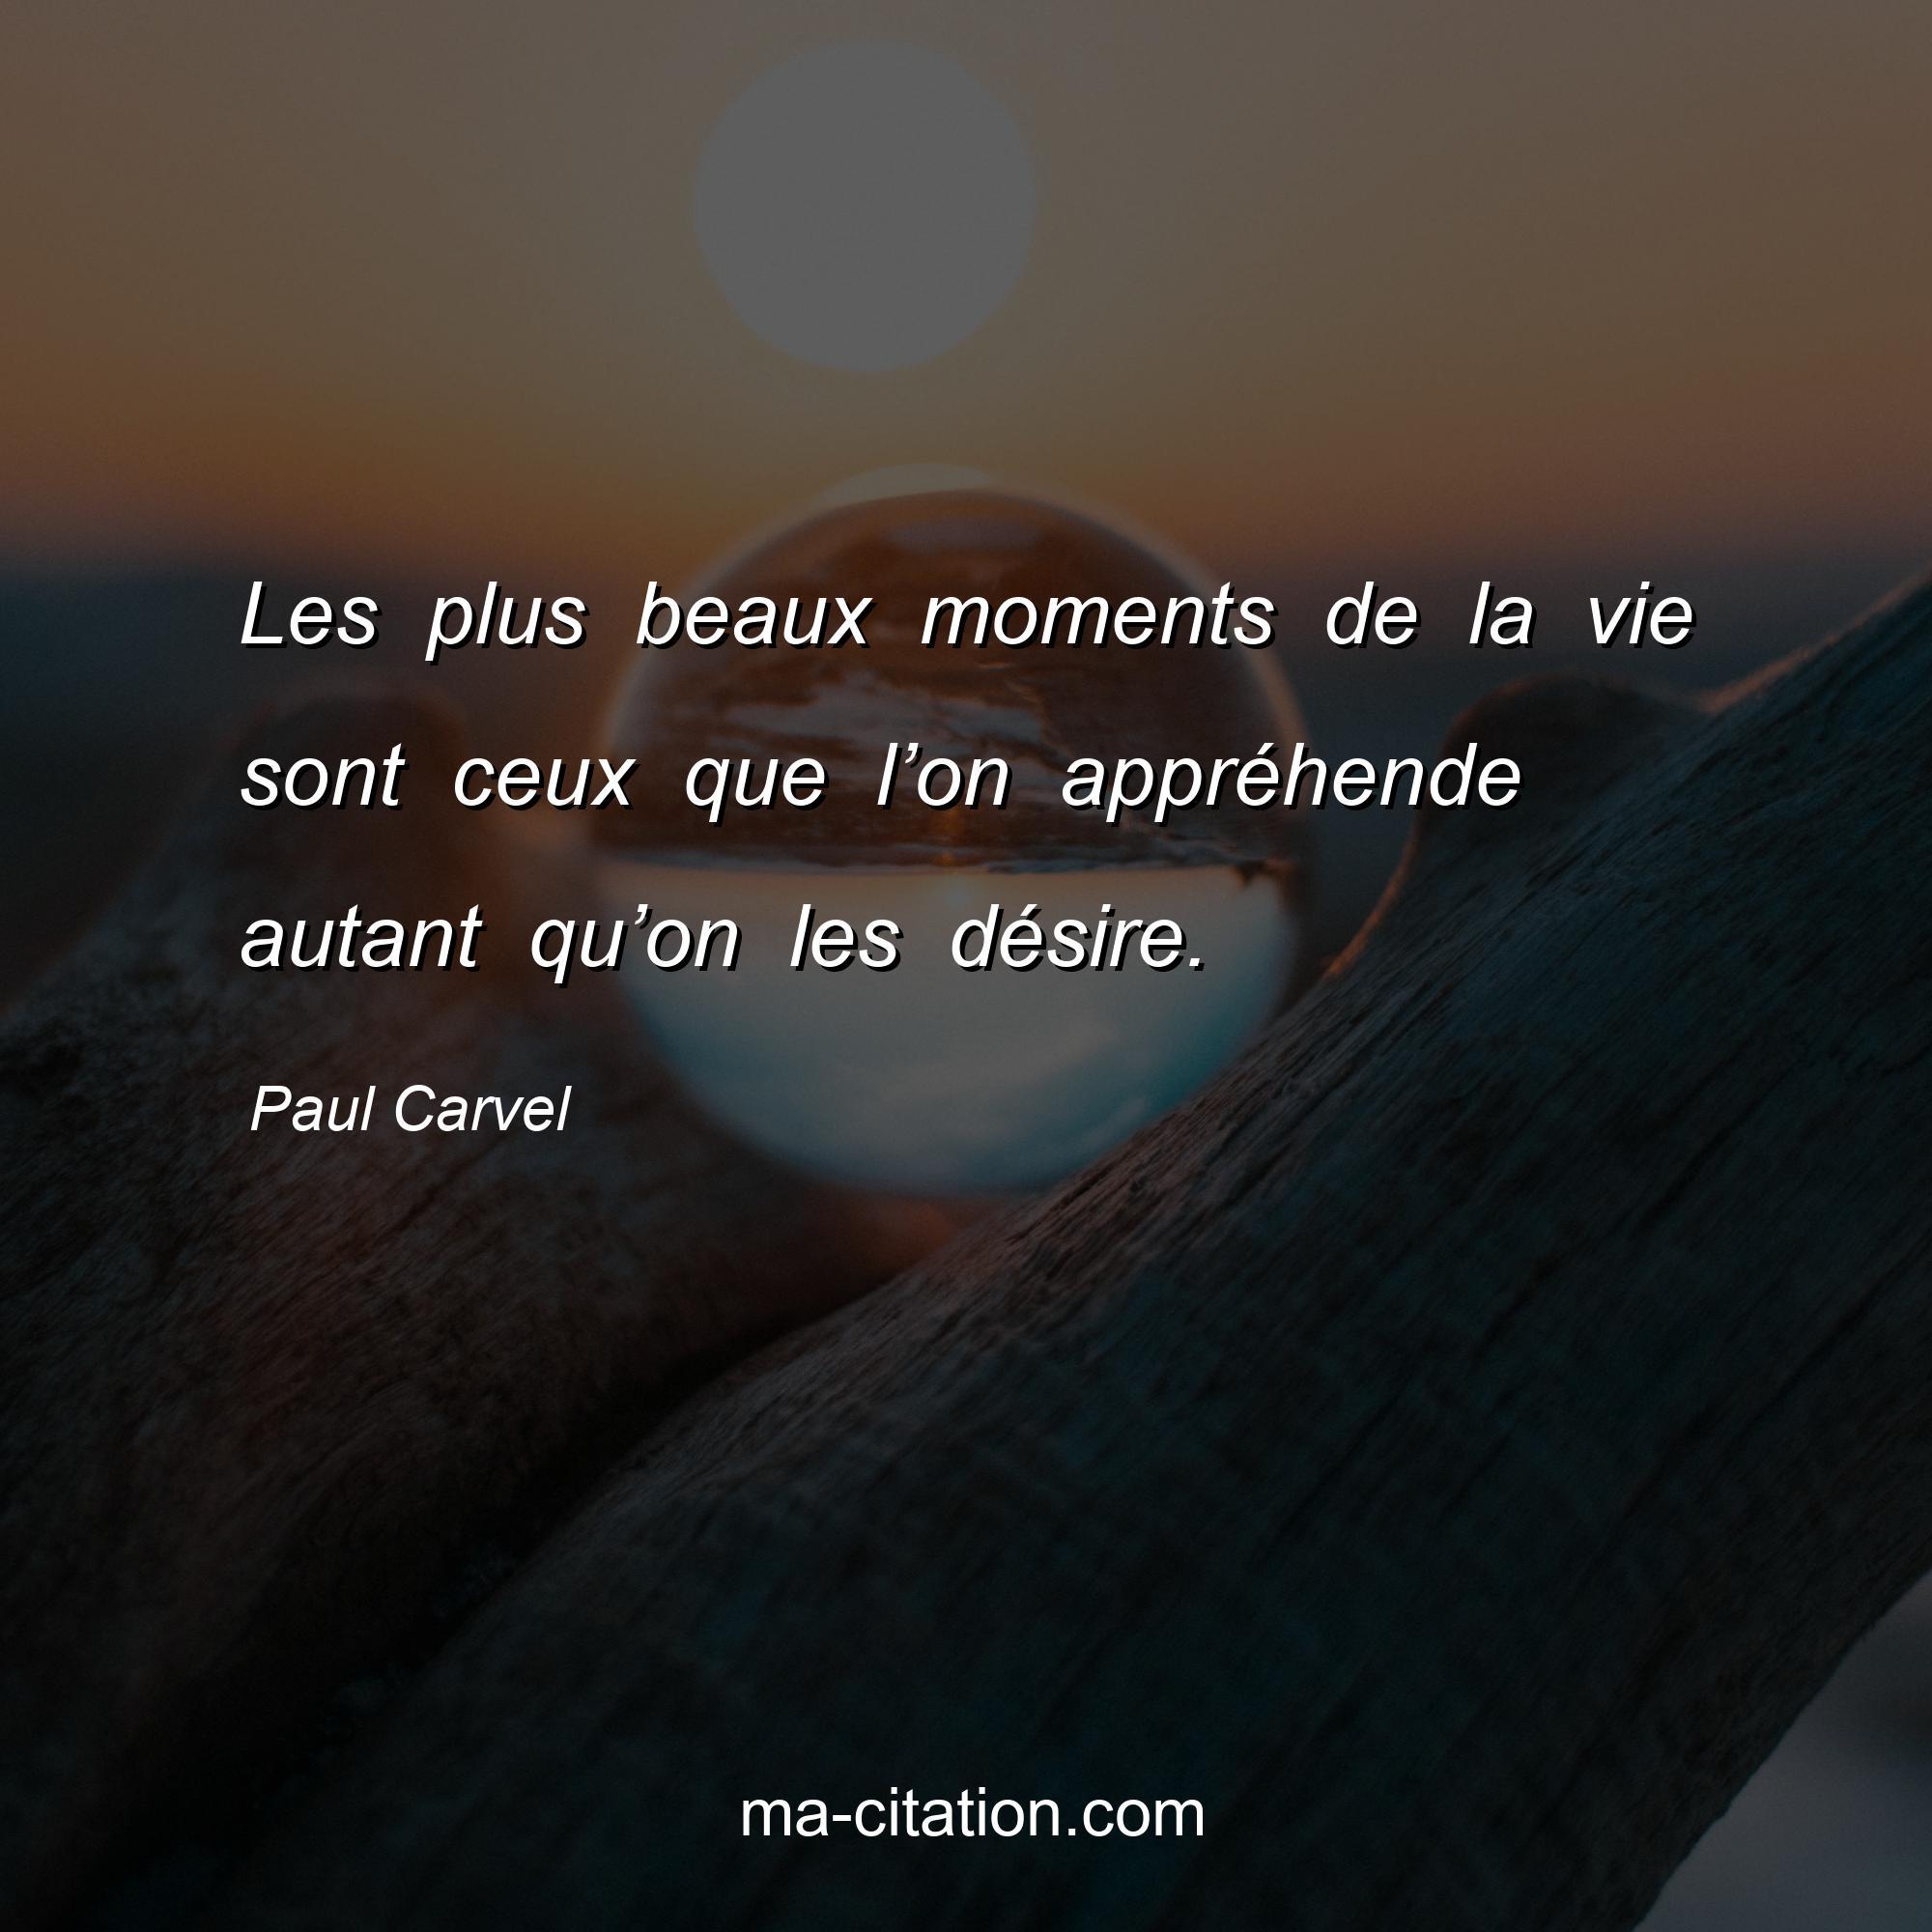 Paul Carvel : Les plus beaux moments de la vie sont ceux que l’on appréhende autant qu’on les désire.